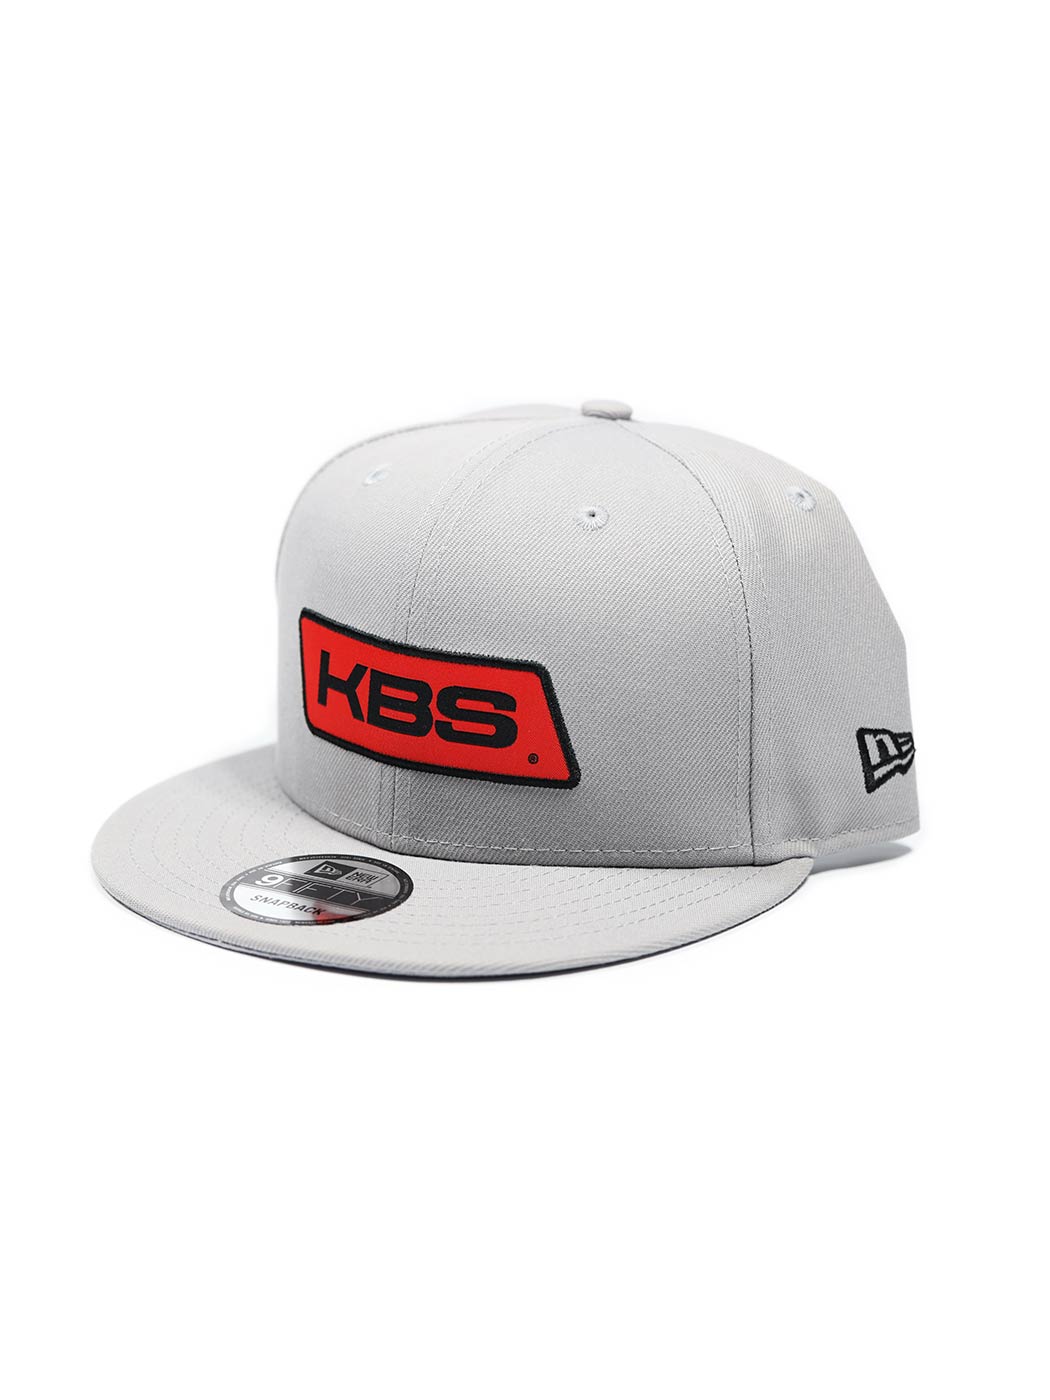 New Era Flat Brim Hat - KBS